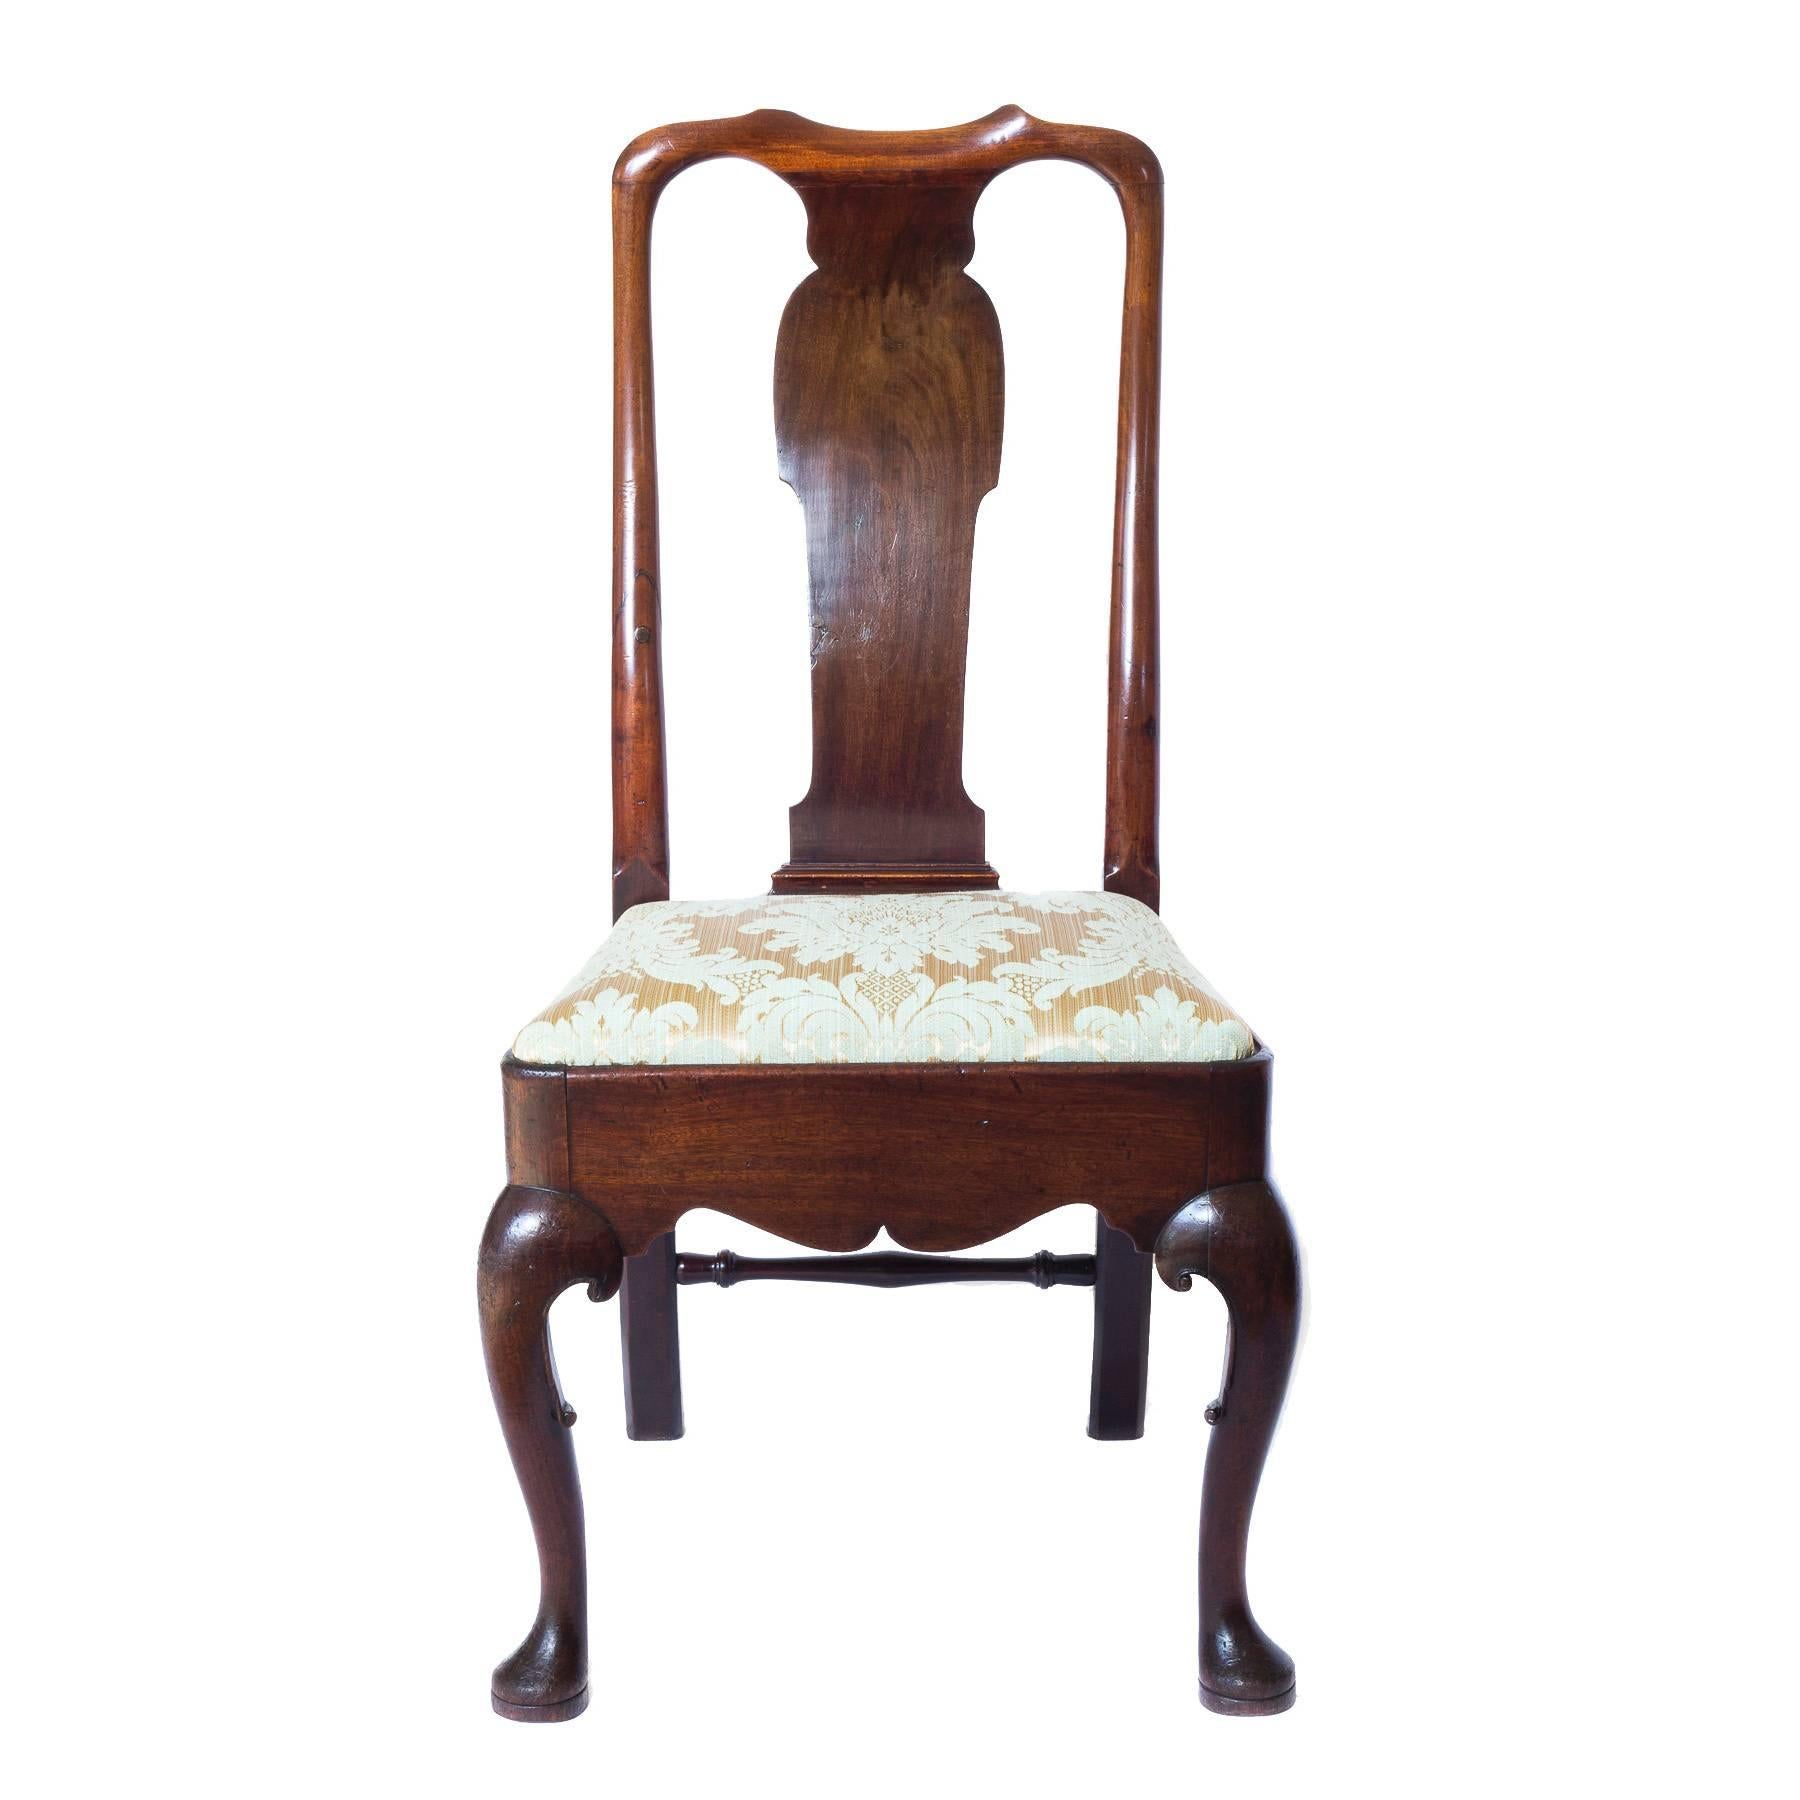 18th century queen anne chair